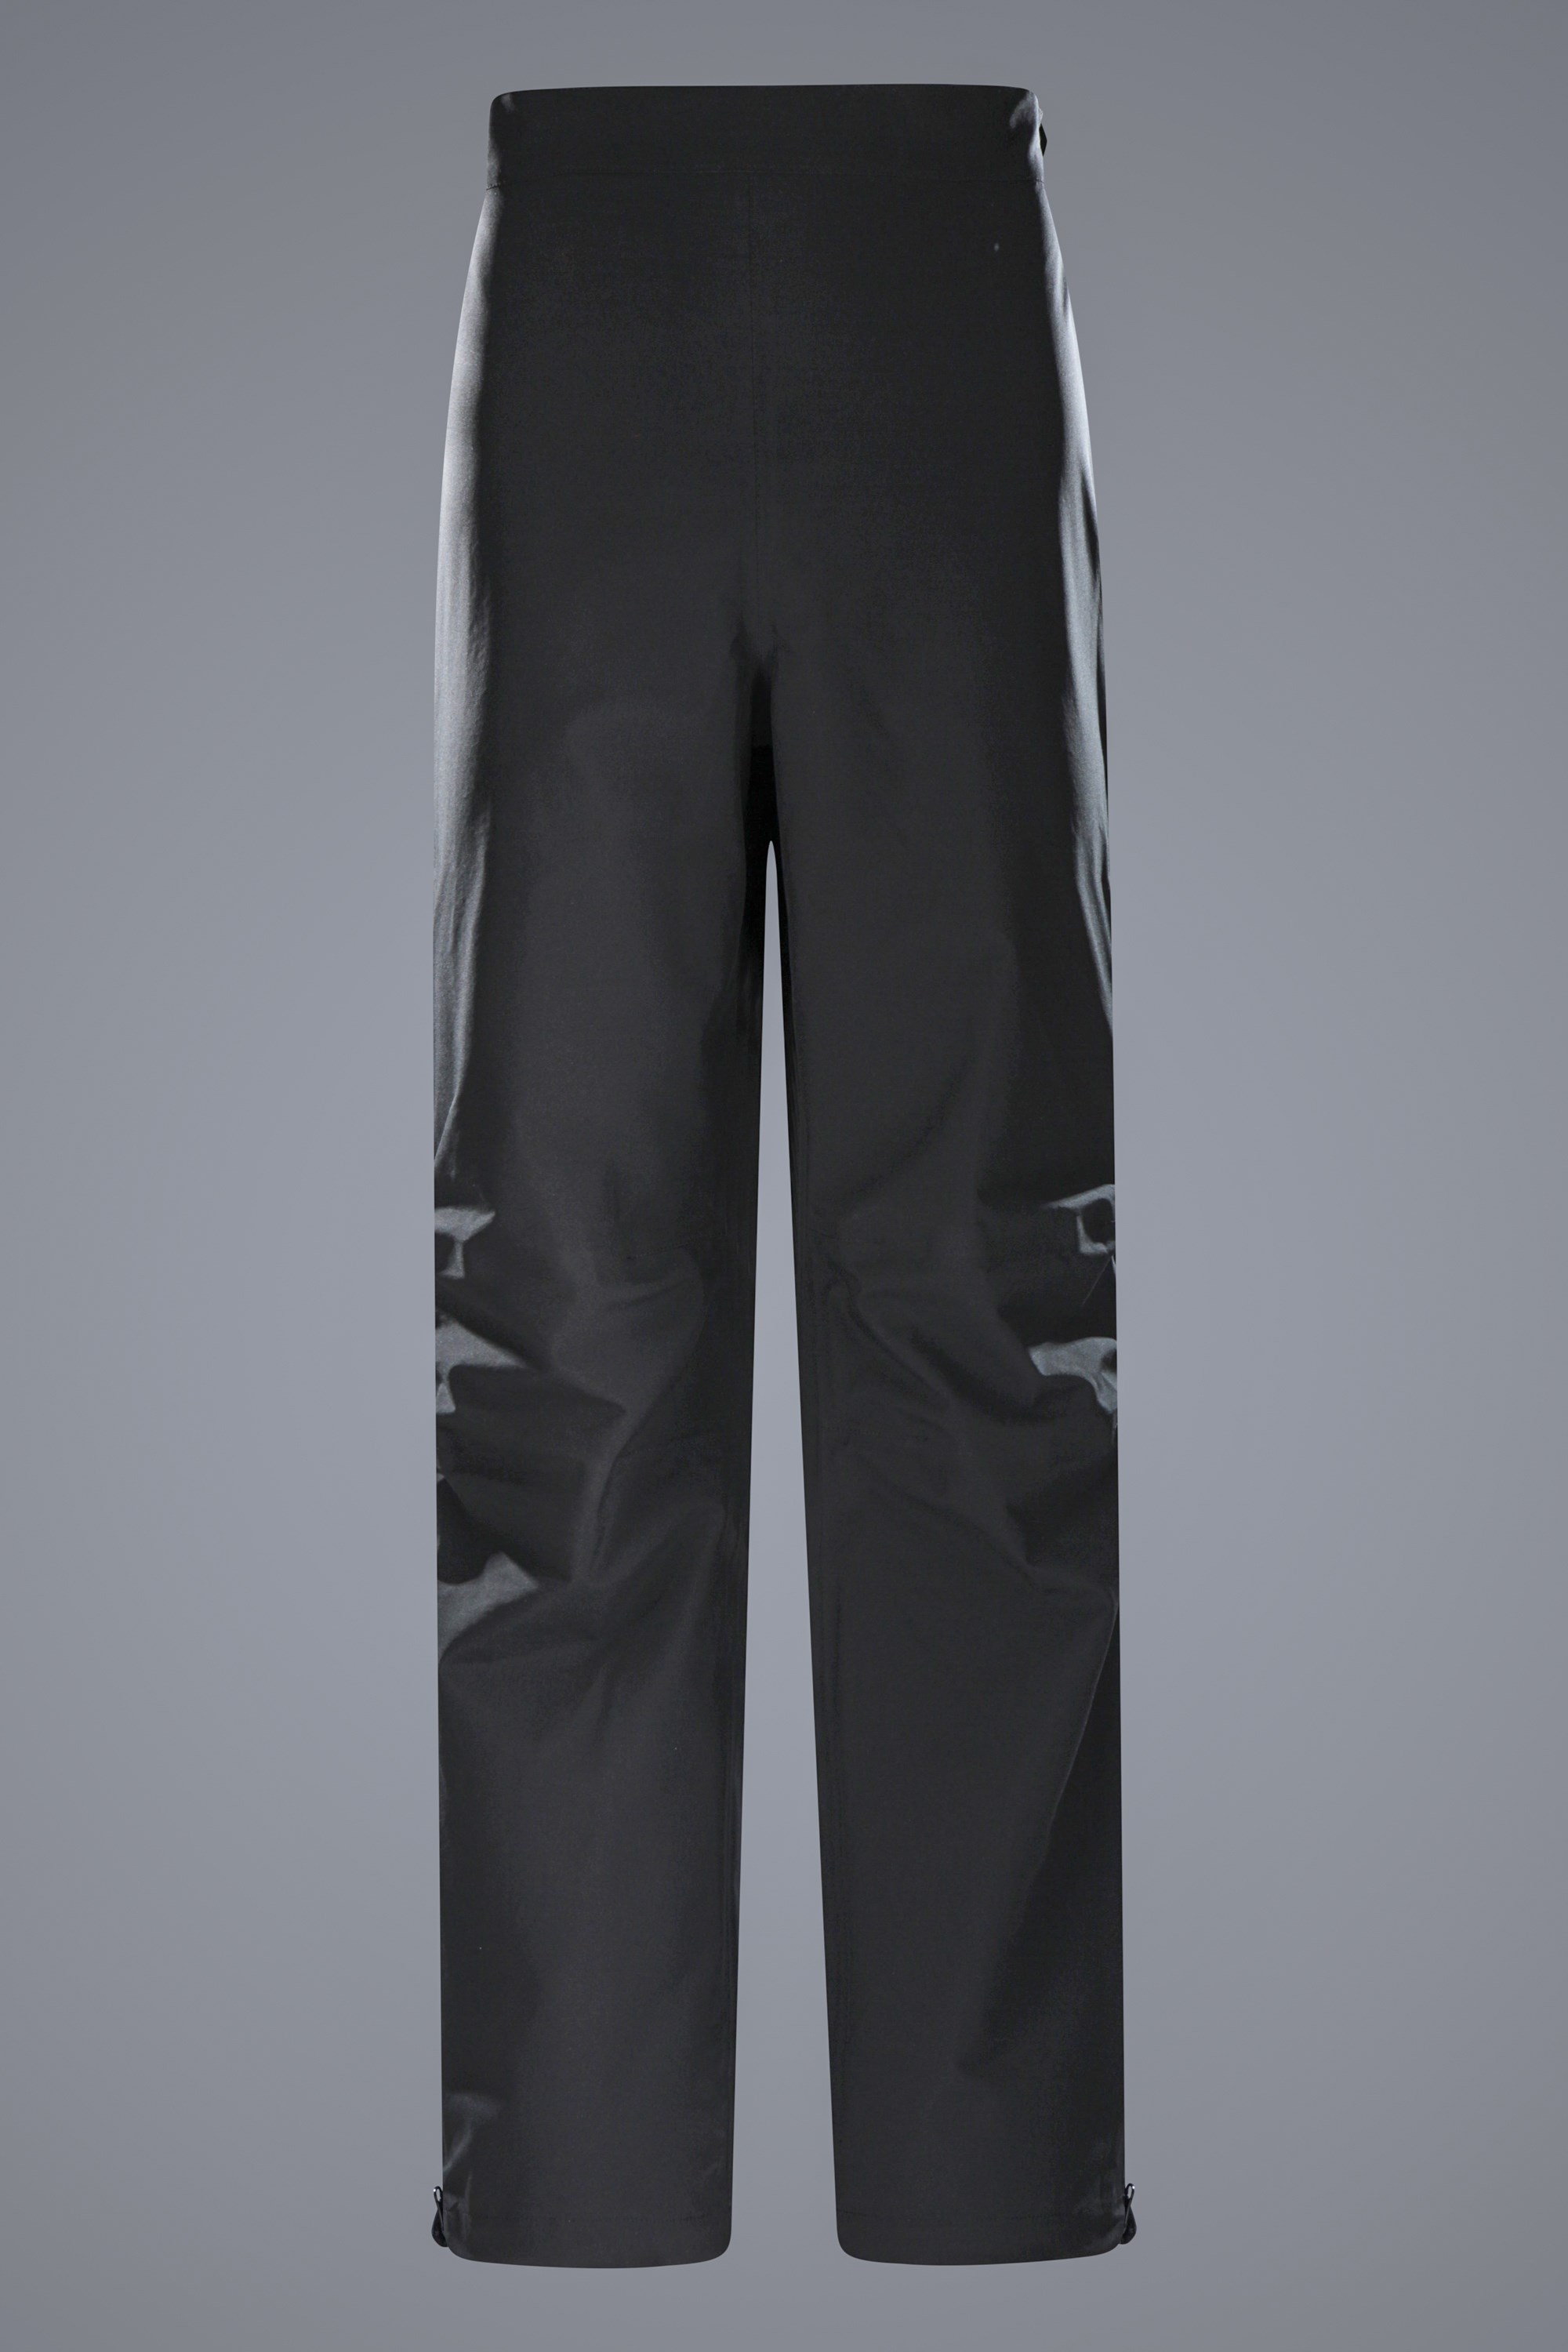 Ski Pants Men And Women, Outdoor Windproof Waterproof Warm Snow Trousers |  Fruugo NZ